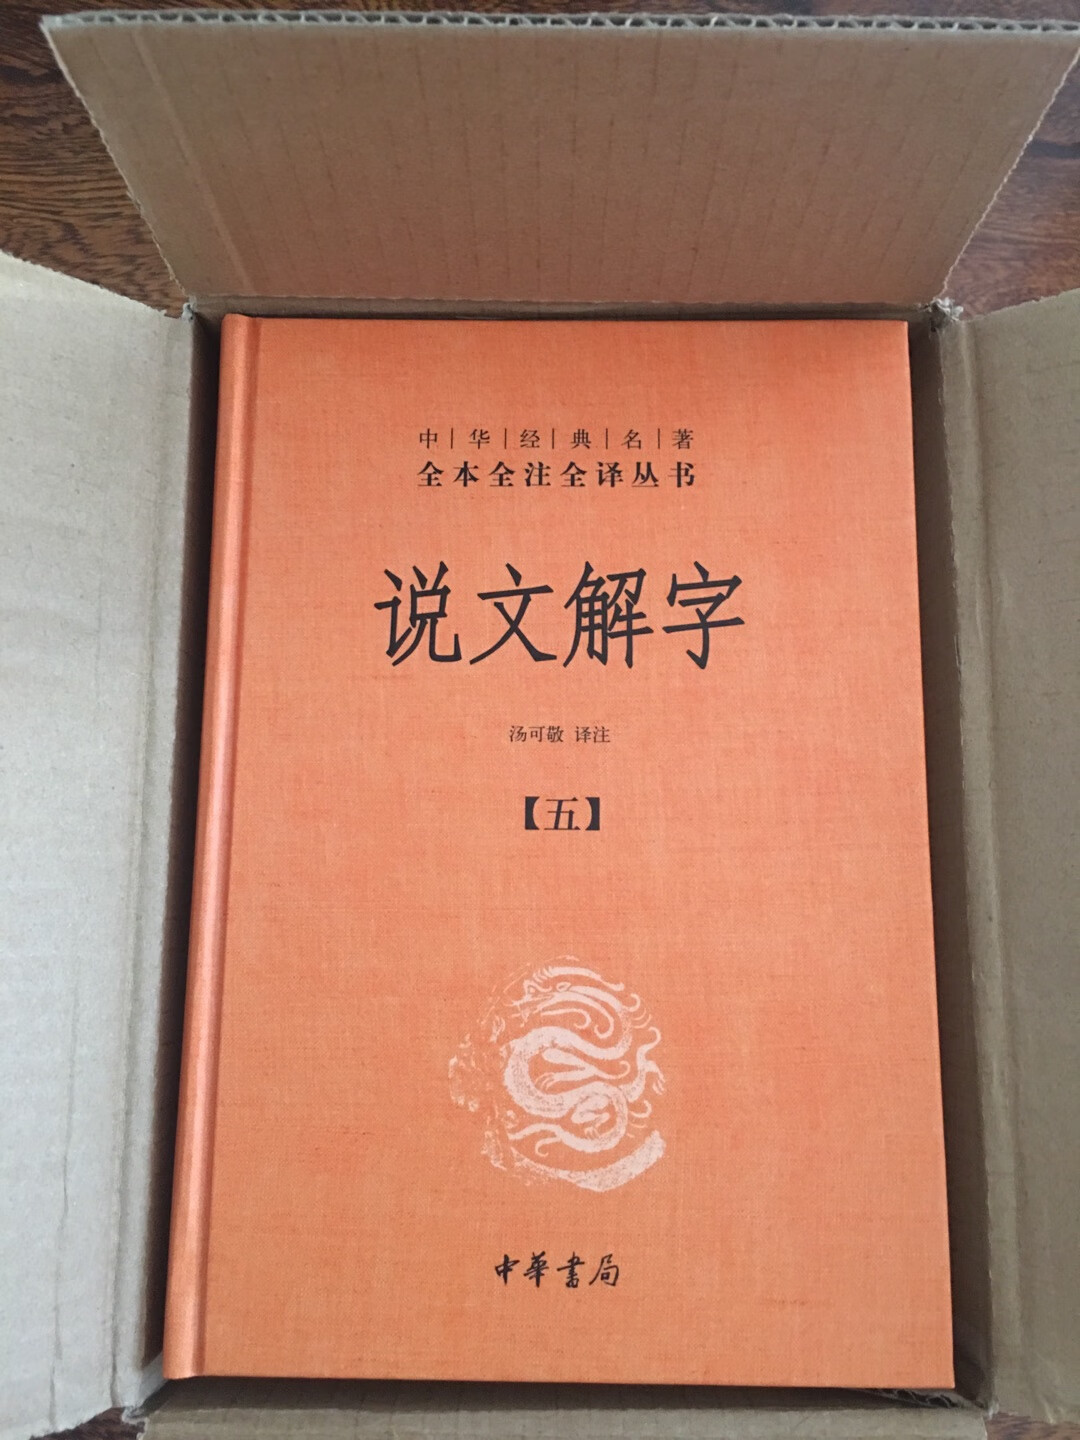 非常好的书，可以明白许多汉字的含义以及演化的过程！